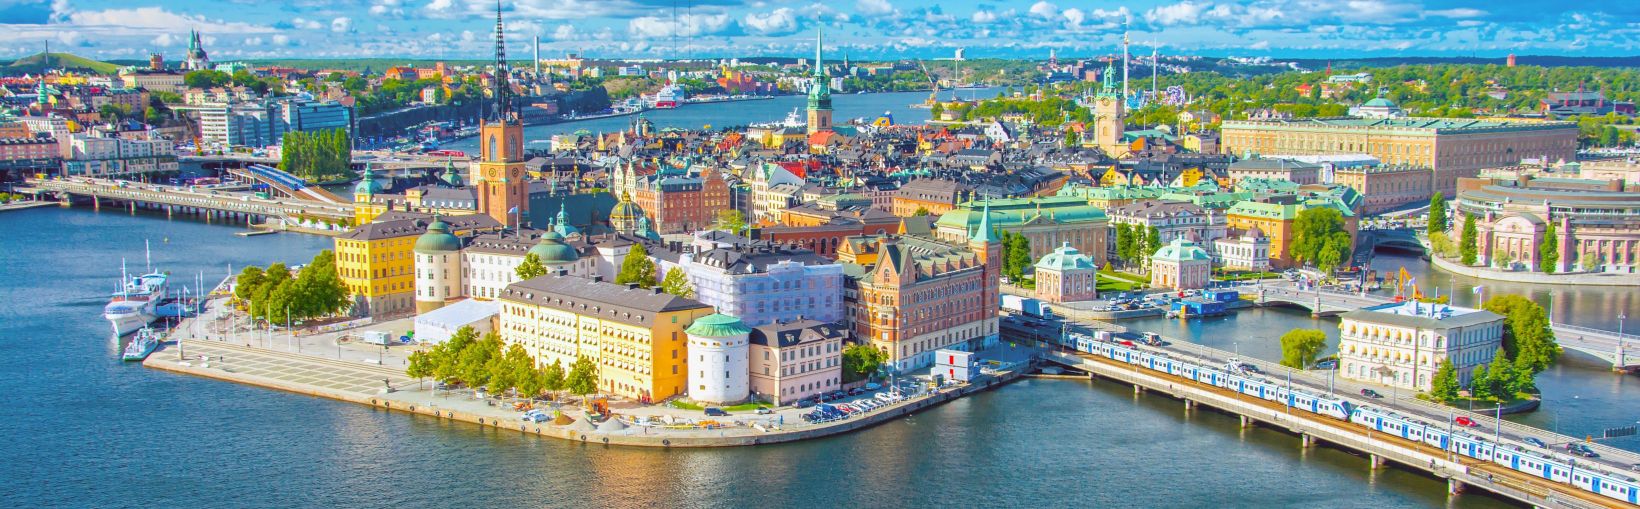 Panoraminis vandeniu ir kalvomis apsupto centrinio Stokholmo tiltų ir pastatų su tradiciniu modernių pastatų bei aukštų smailių deriniu, vaizdas saulėtą dieną.